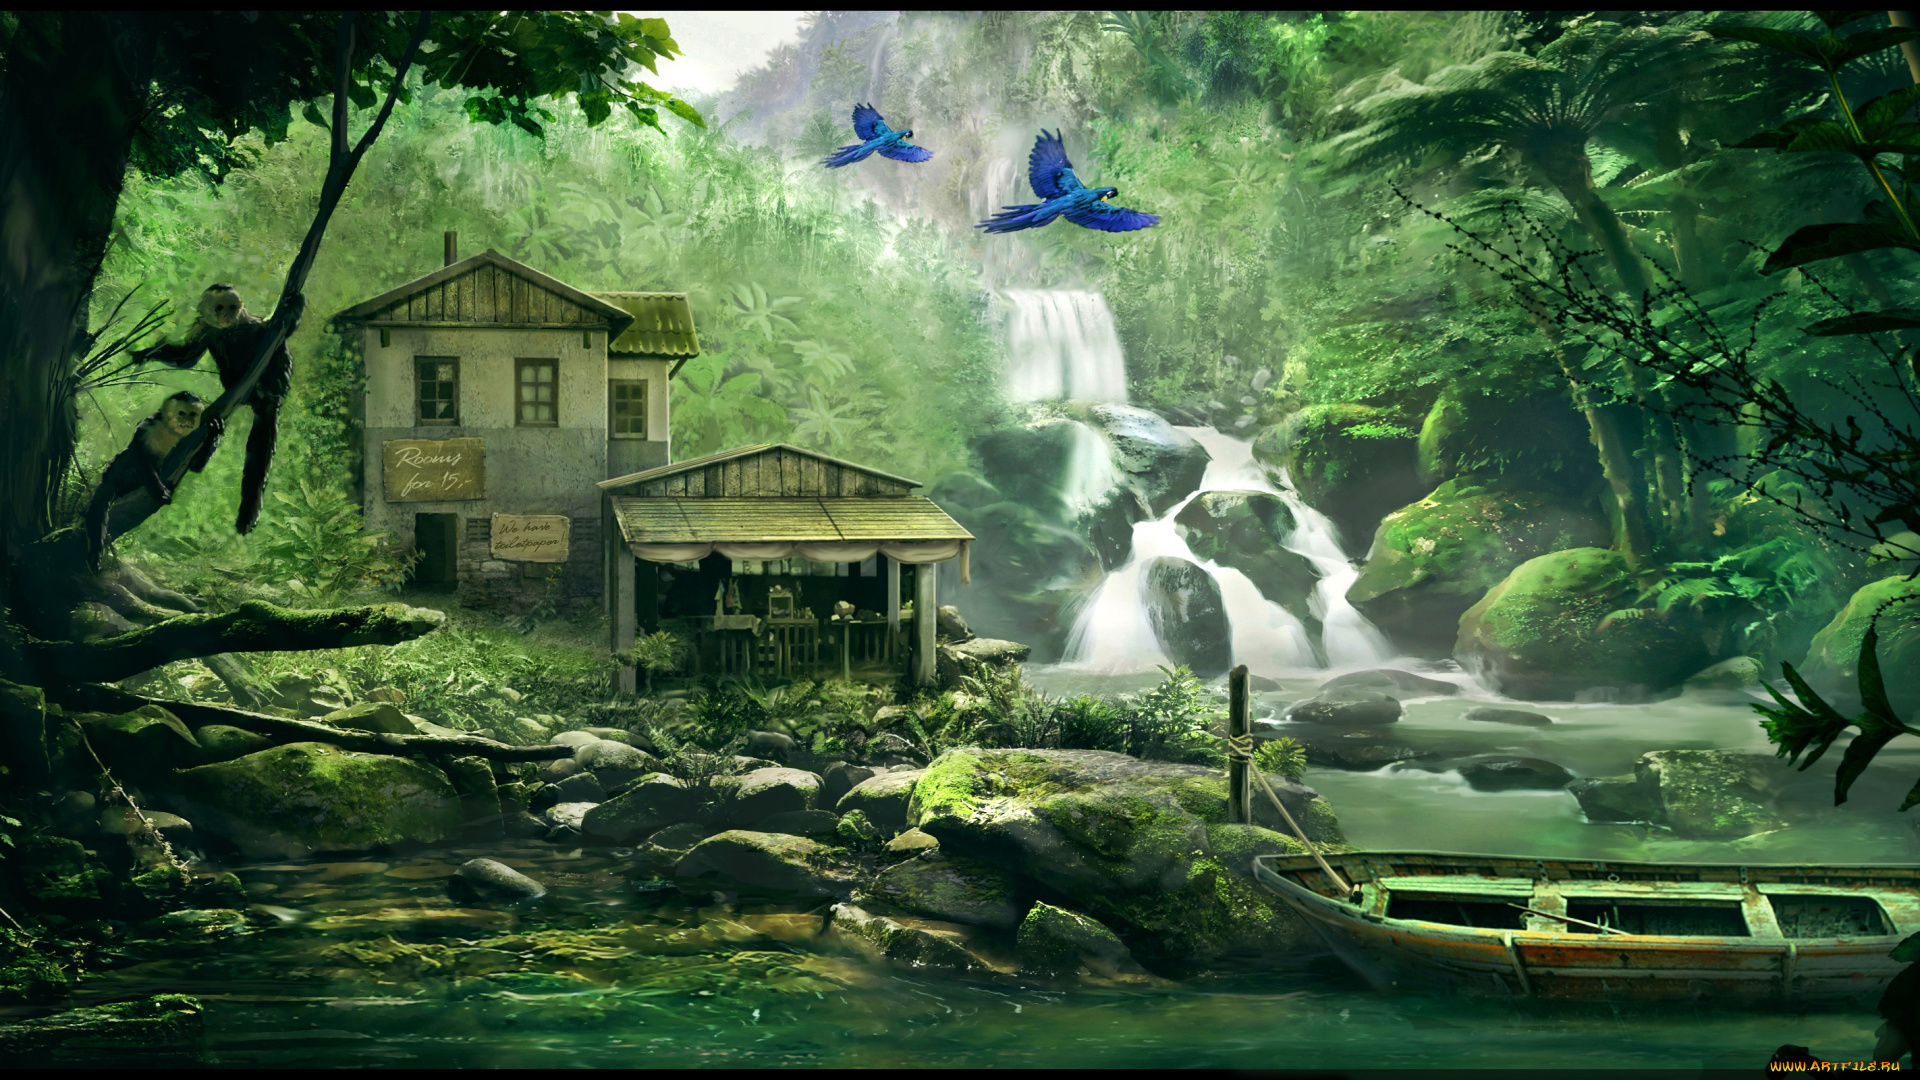 рисованное, природа, дом, река, горы, водопад, лодка, птицы, обезьяна, камни, лето